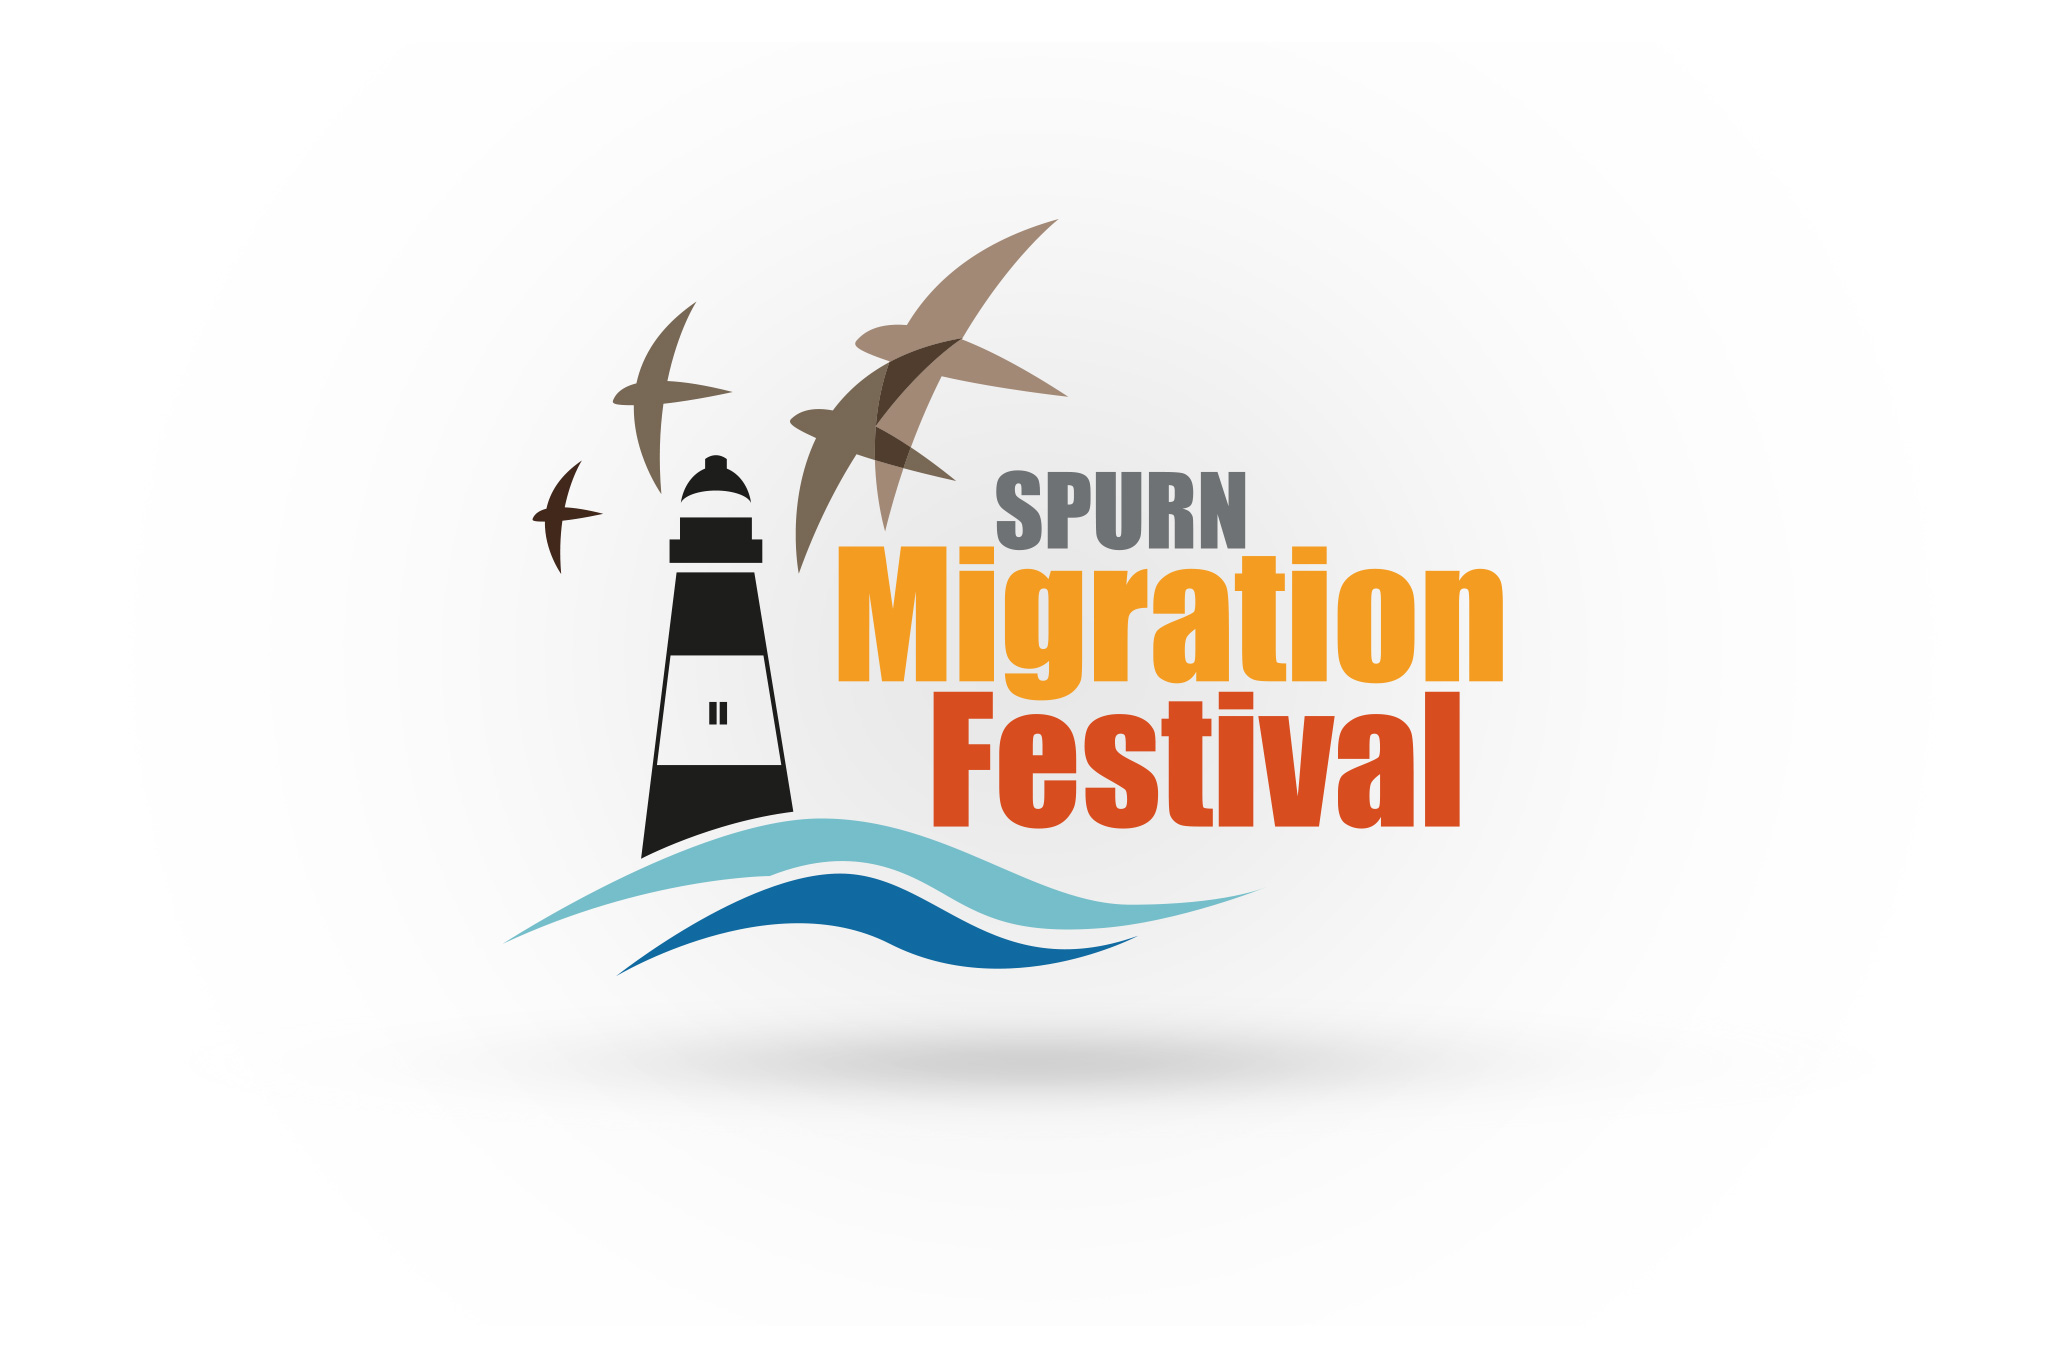 Spurn Migration Festival